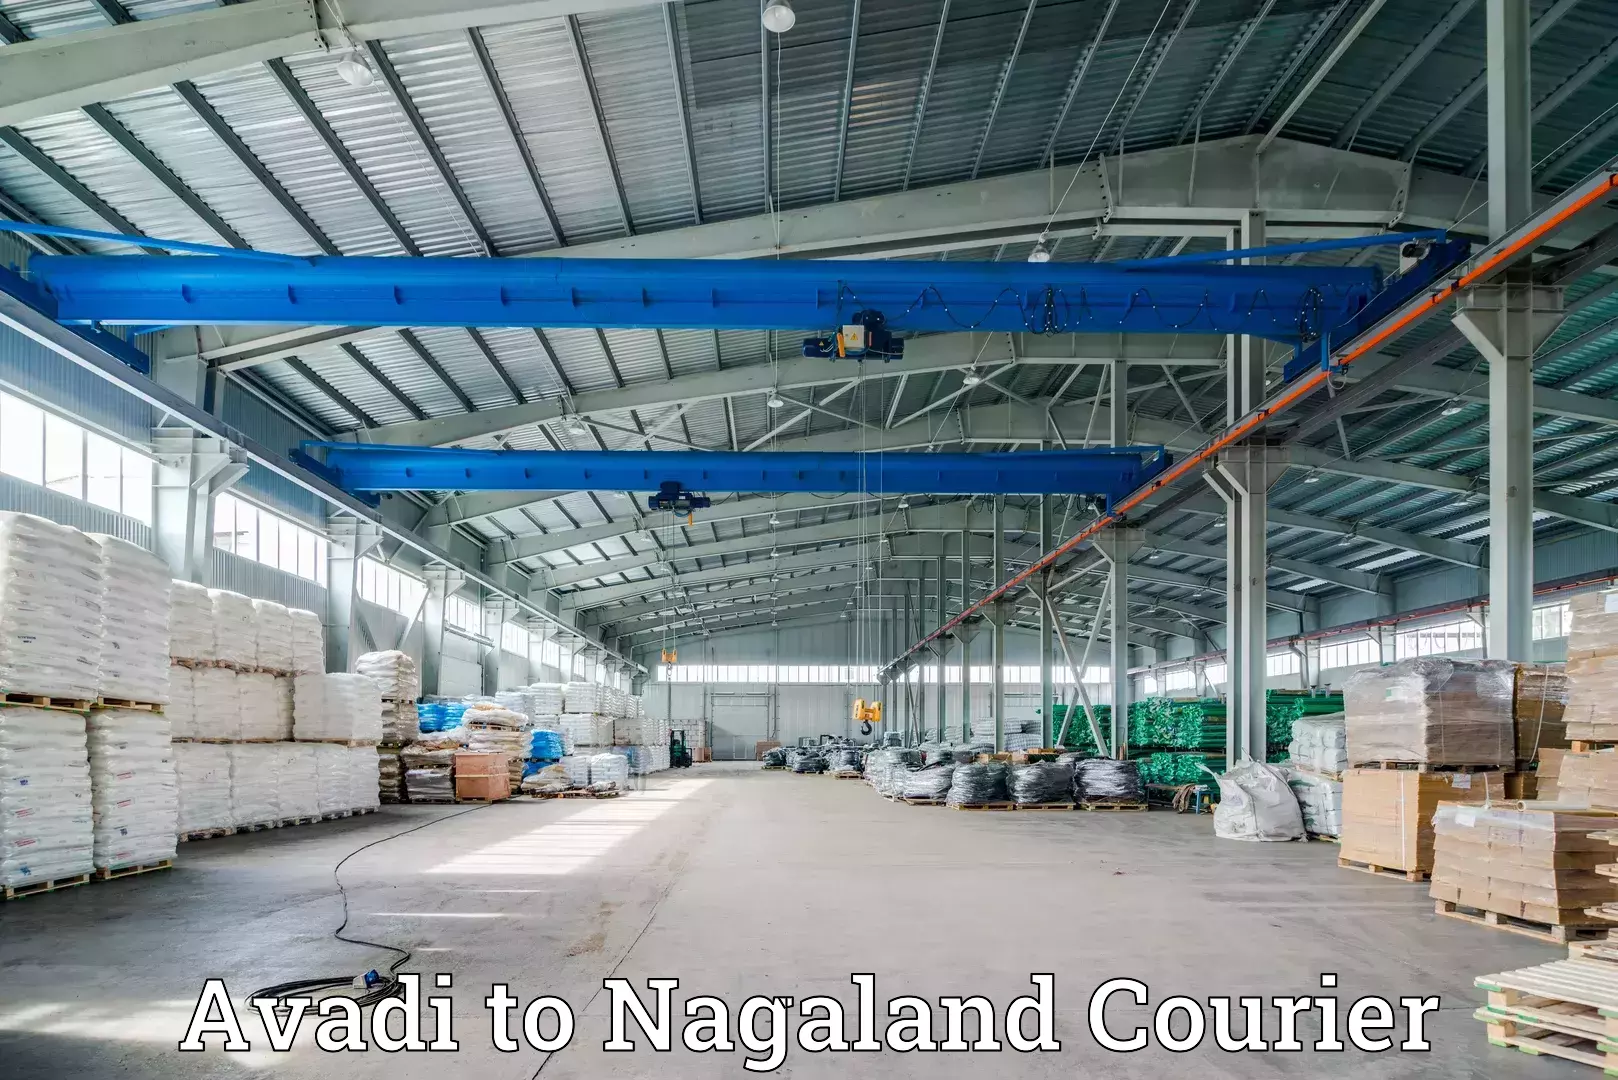 High-capacity shipping options Avadi to Nagaland